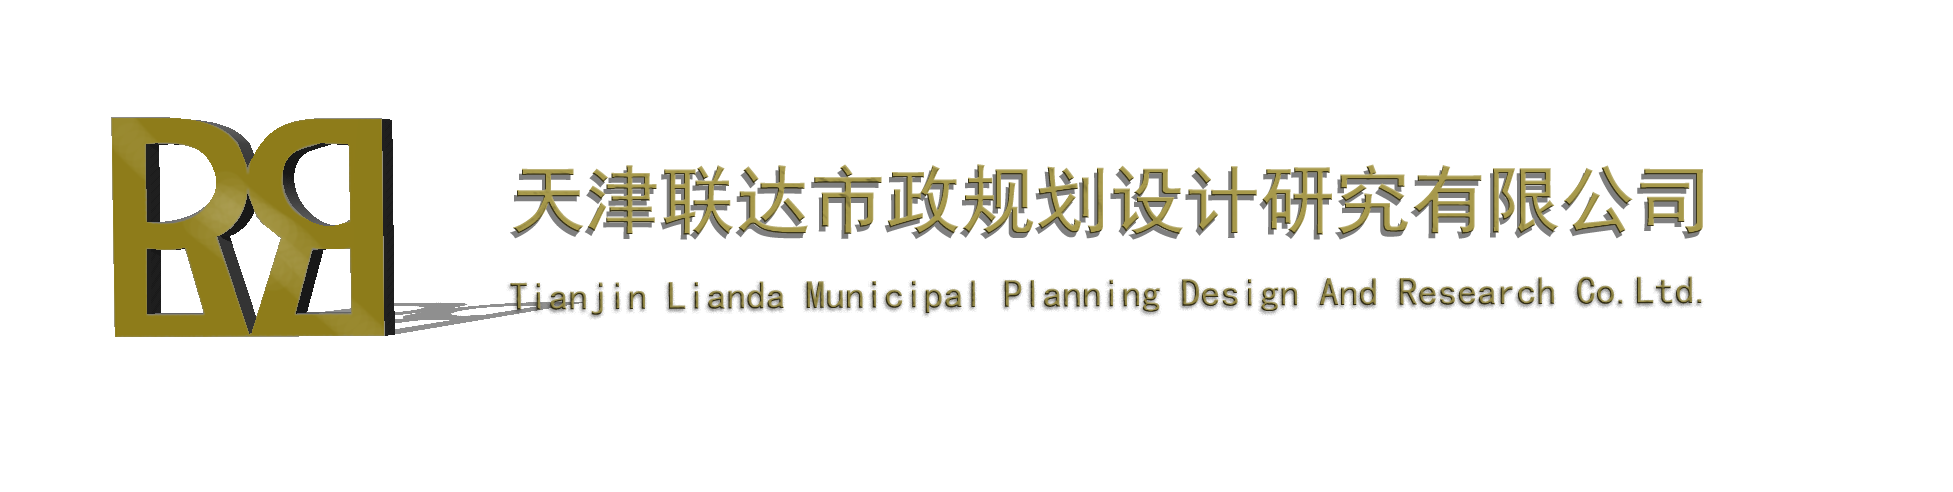 天津联达市政规划设计研究有限公司